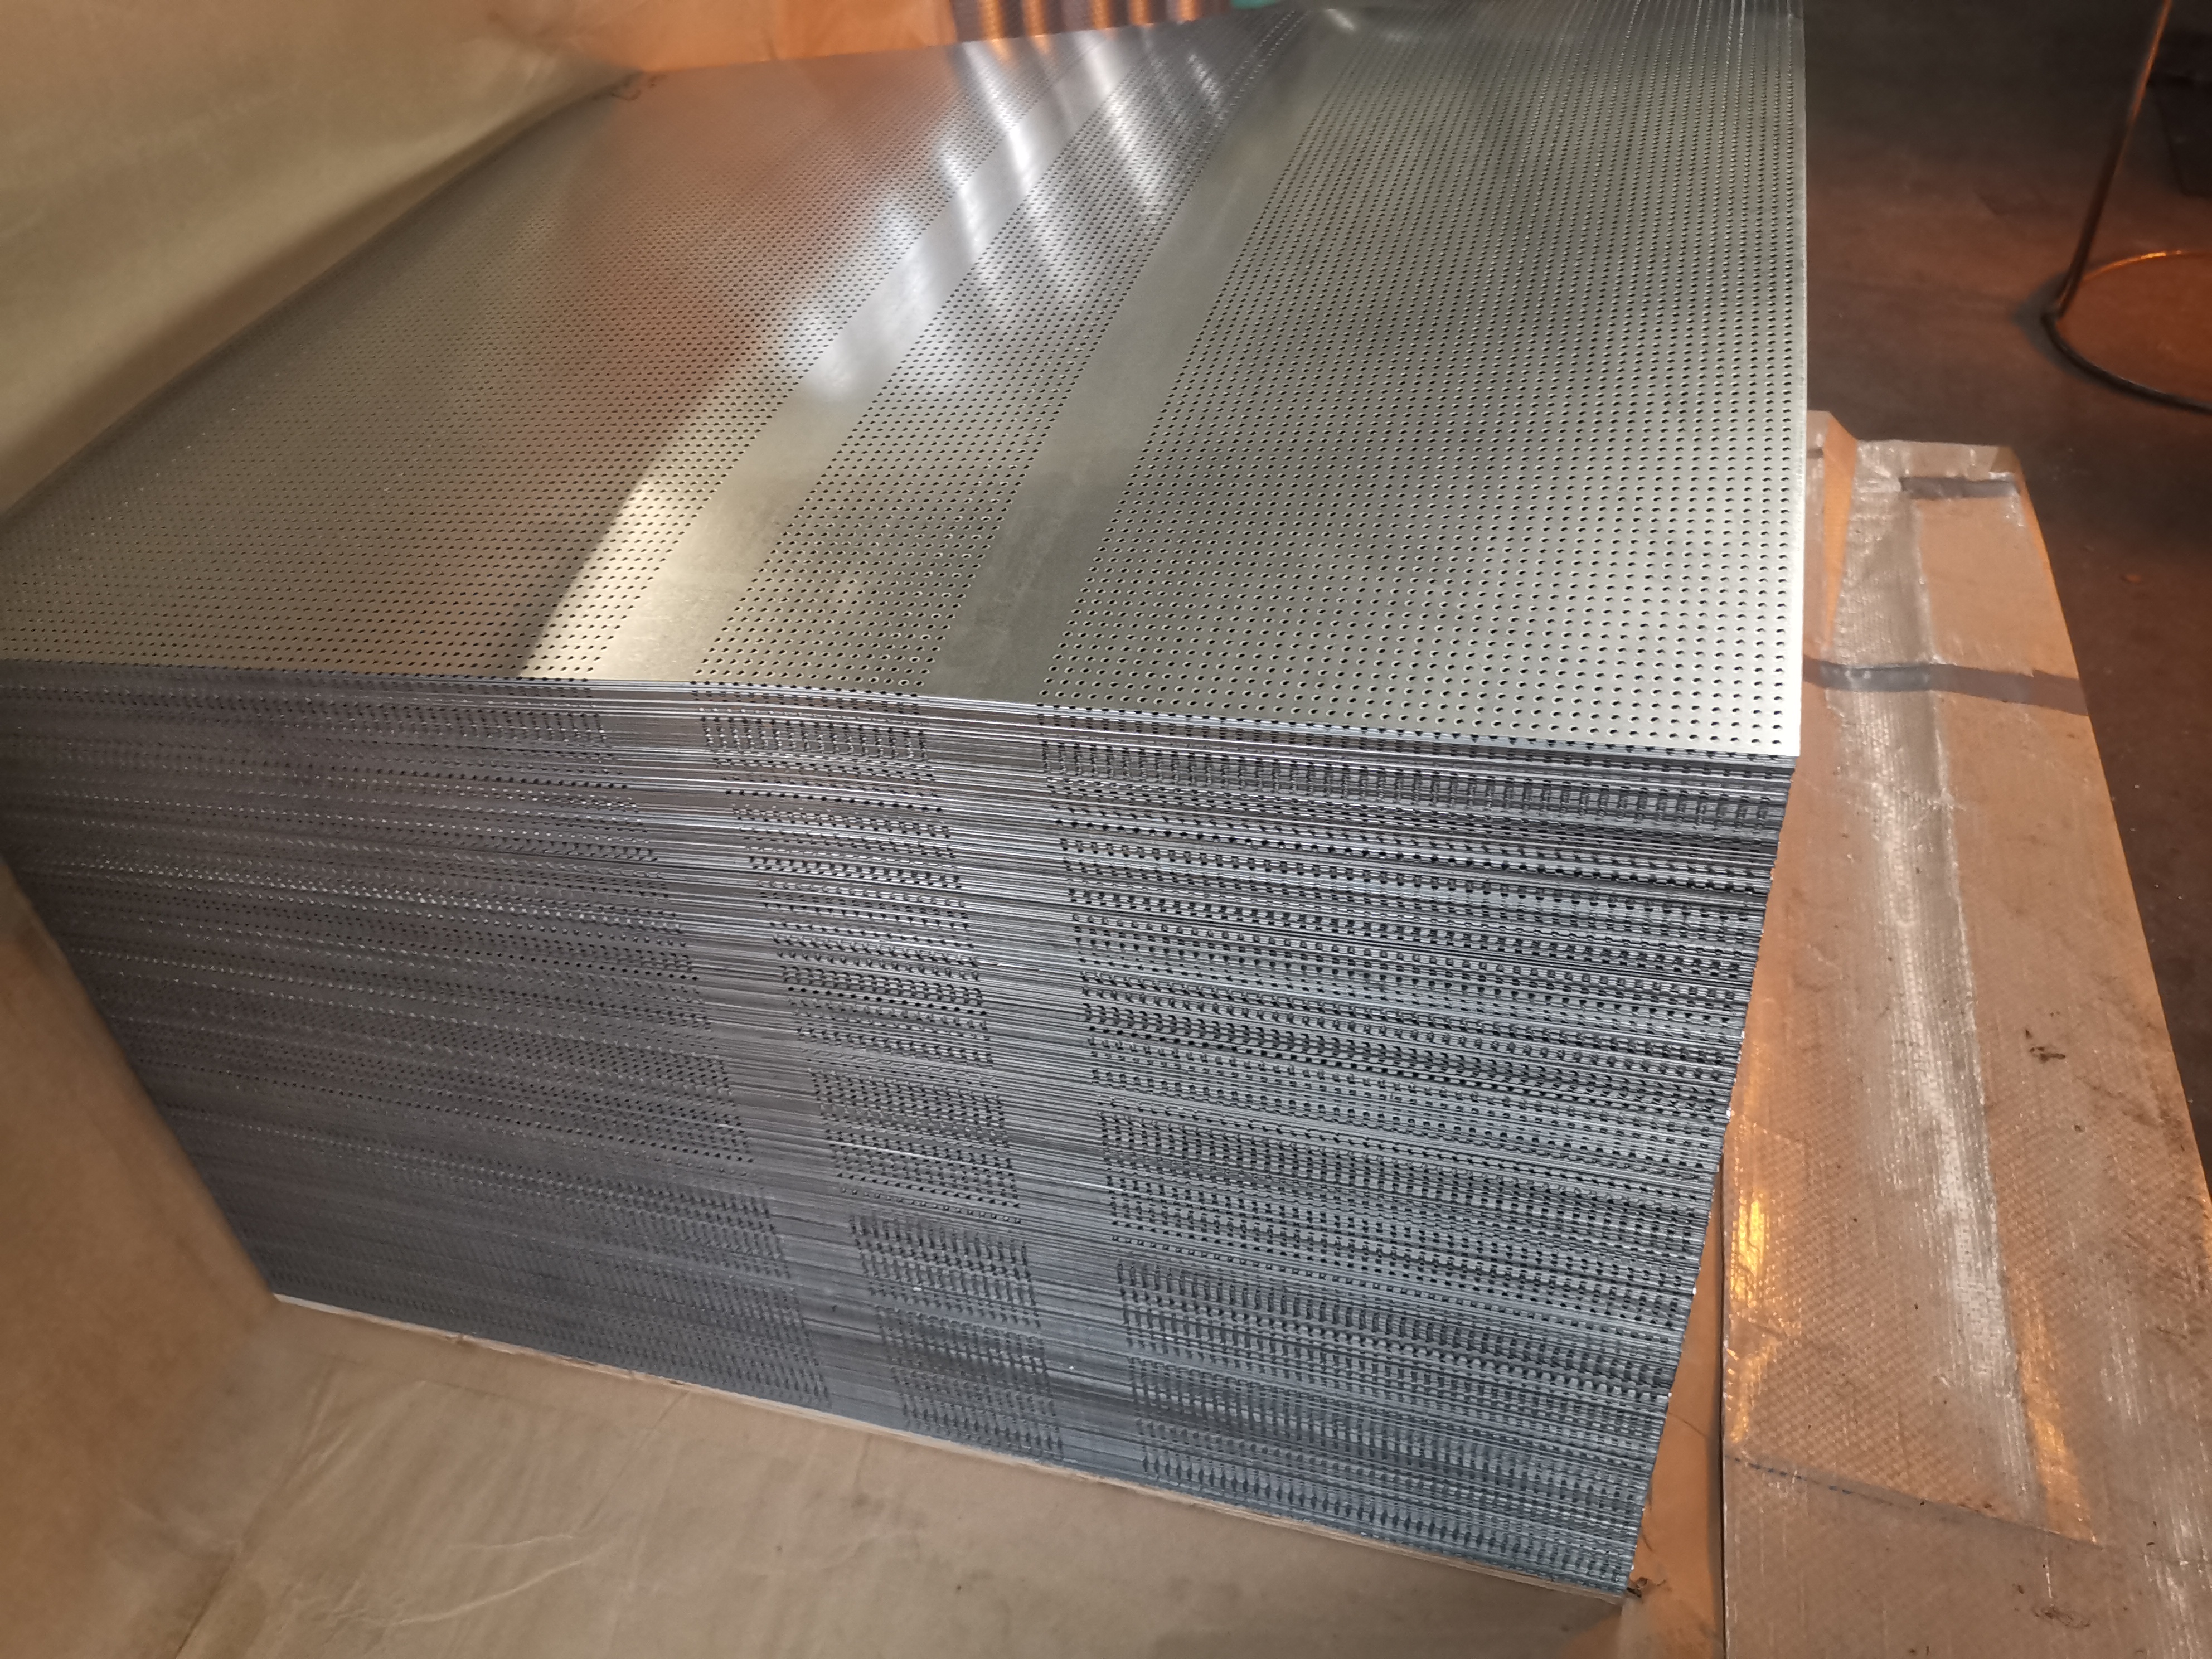 carbon steel, stainless steel, perforated metal mesh, metal mesh